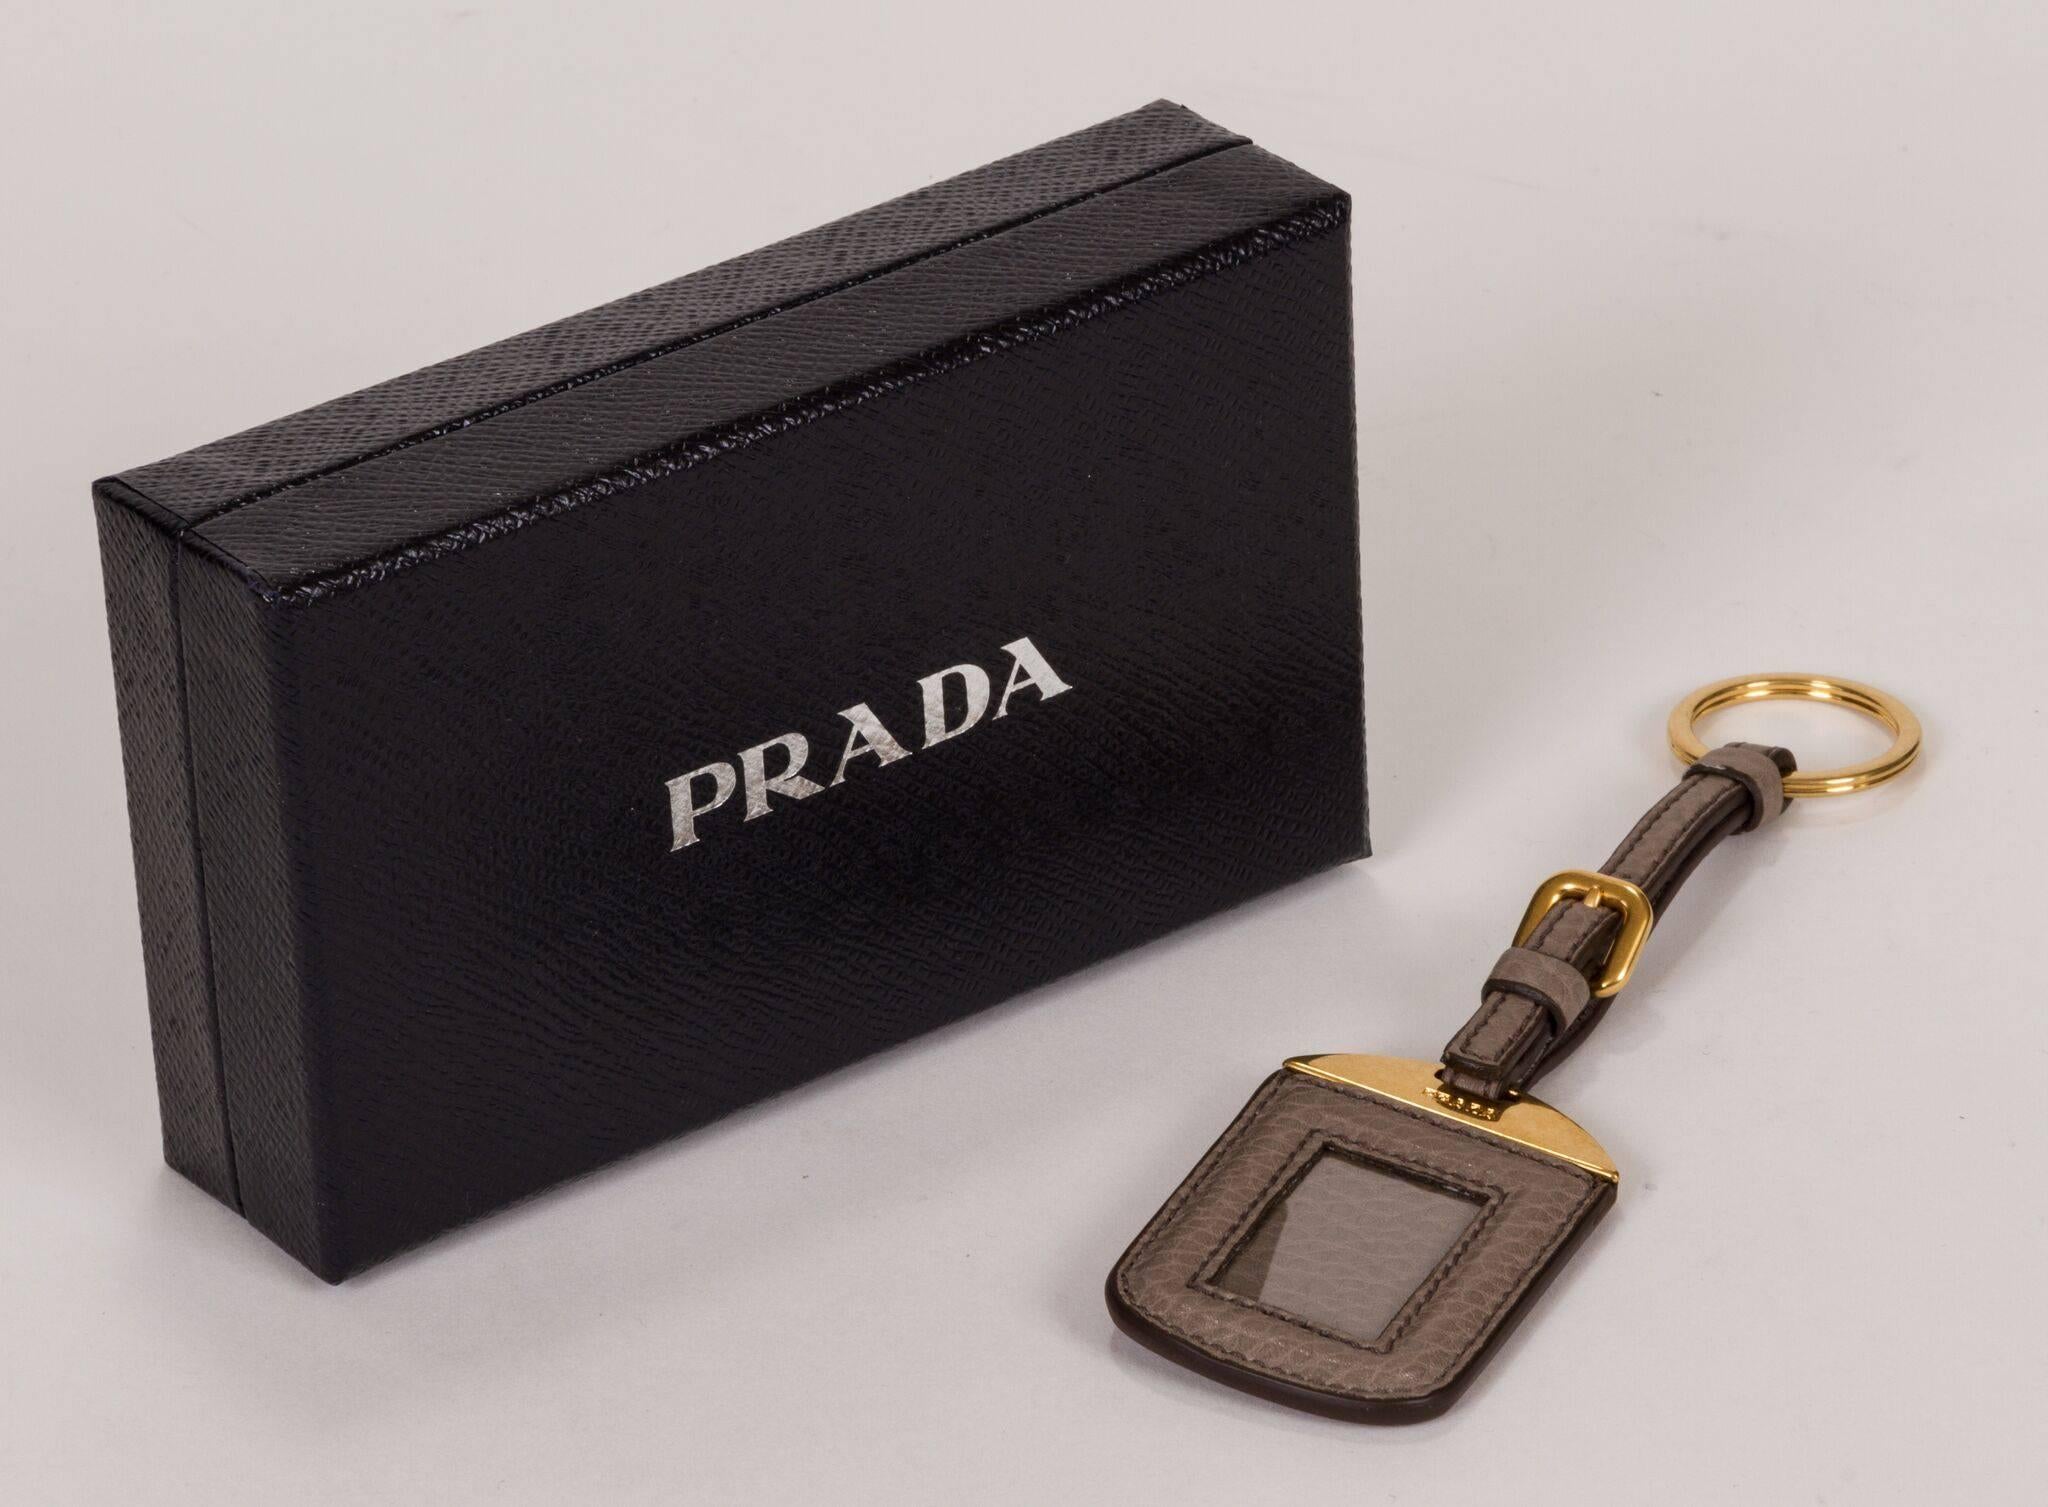 New 2014 Prada Schlüsselanhänger und Namensschildhalter. Graues Leder und goldfarbene Hardware. Kommt mit Originalverpackung und Anhänger.
